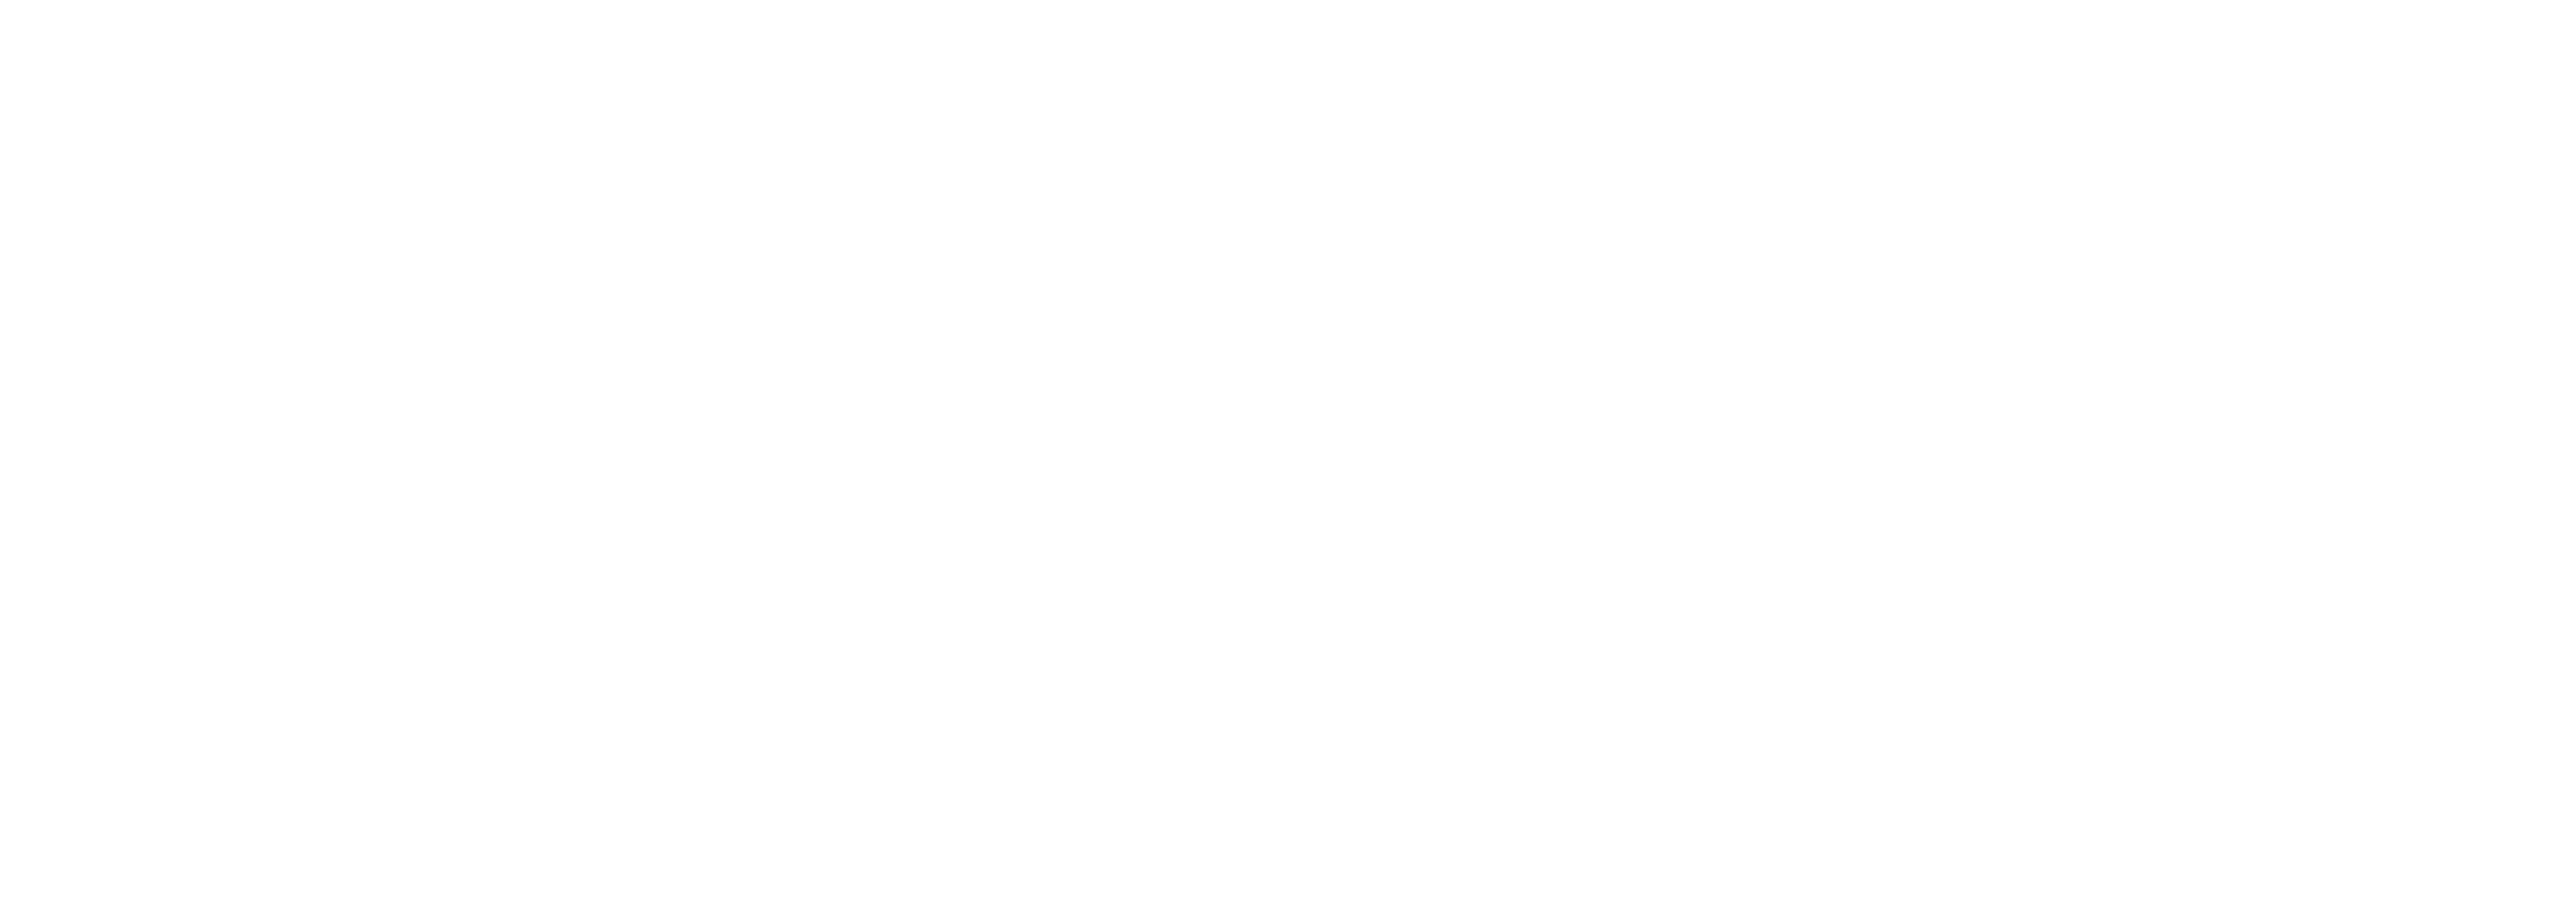 Dentiste'